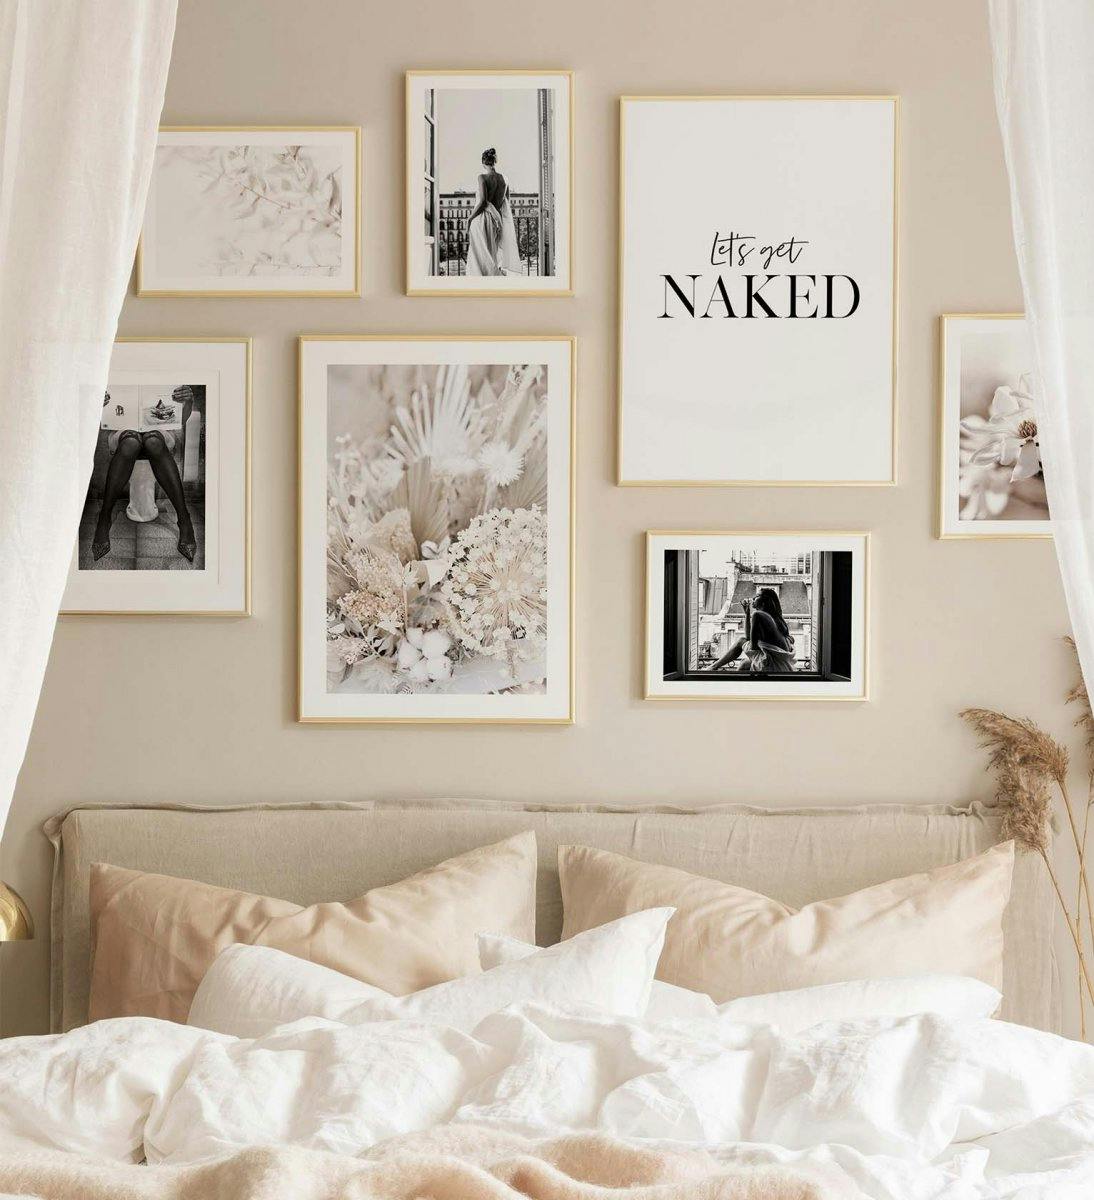 Le stampe artistiche monocromatiche combinate con i colori beige creano una parete da galleria alla moda per la camera da letto